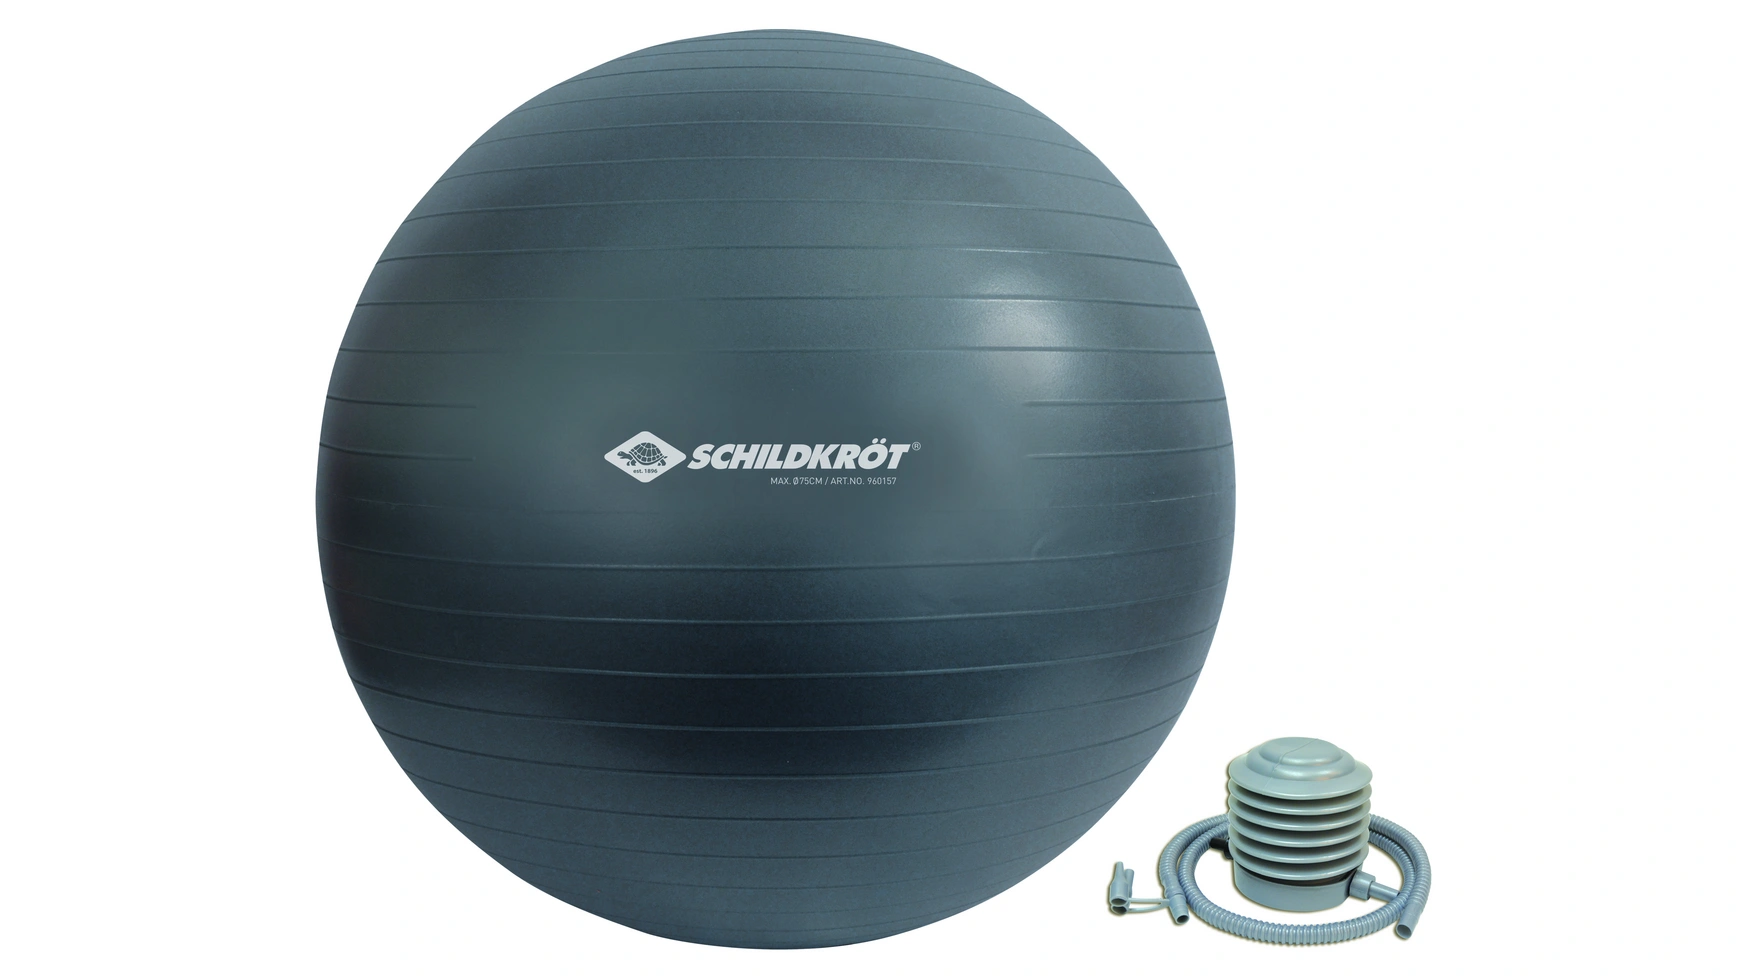 Schildkröt Fitness Мяч для упражнений 75 см, без фталатов, с шариковым насосом, антрацит высококачественная пенополиуретановая базовая веревка для тенниса тренировочное оборудование для начинающих тренировочное оборудовани